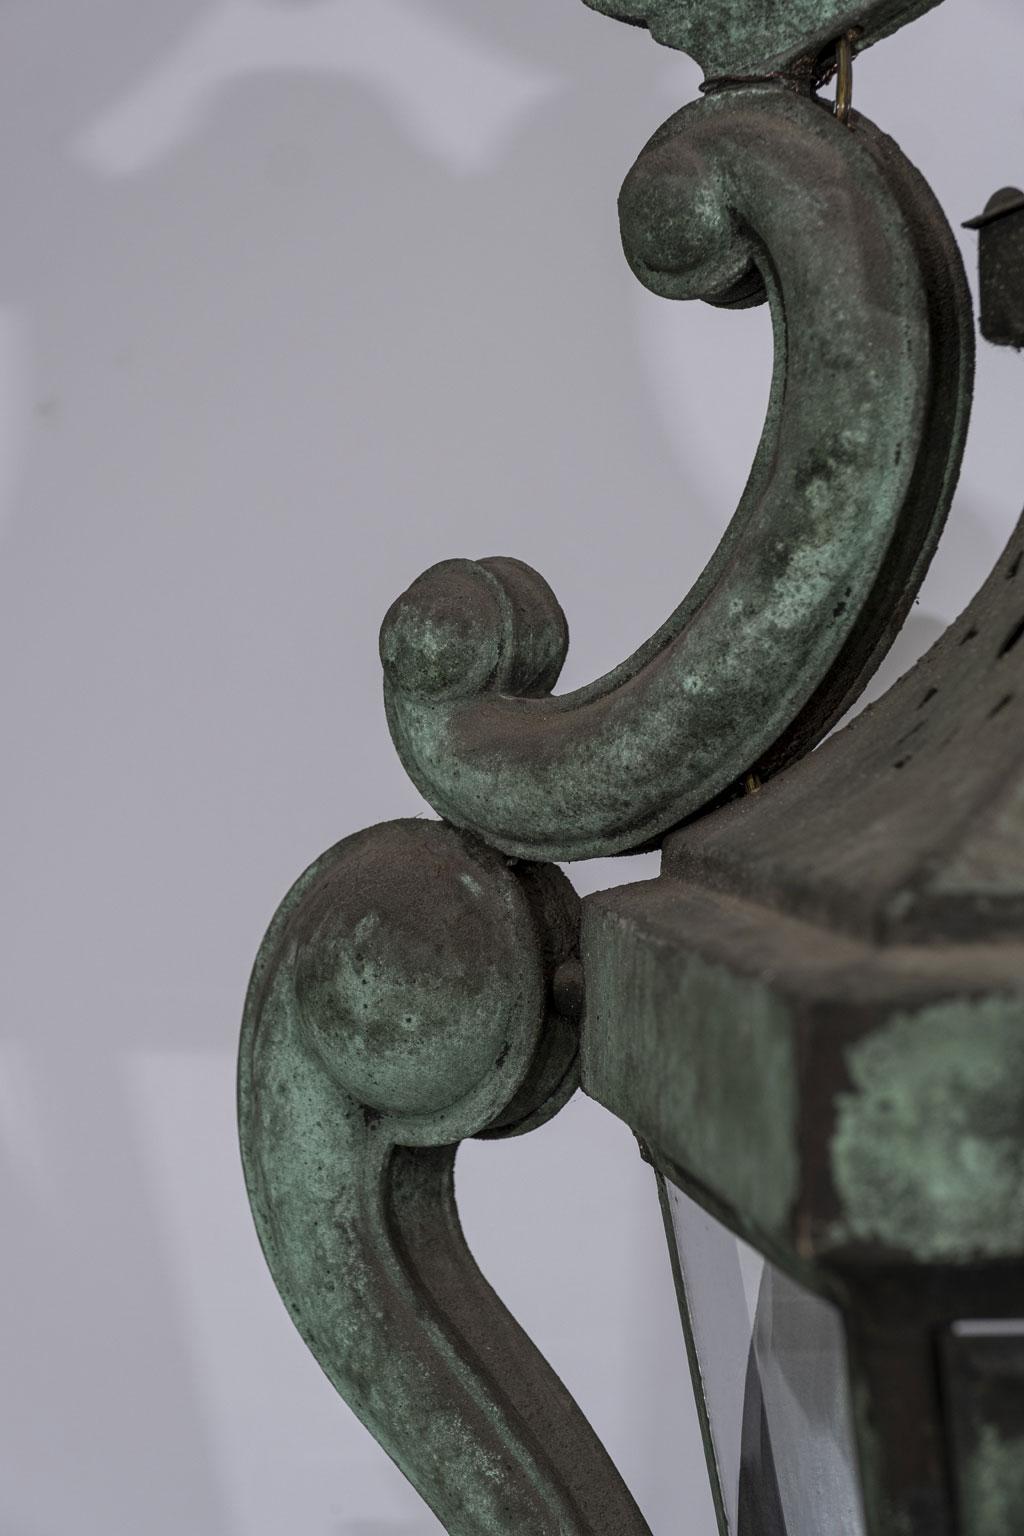 19th Century Decorative Italian Verdigris Copper Lantern